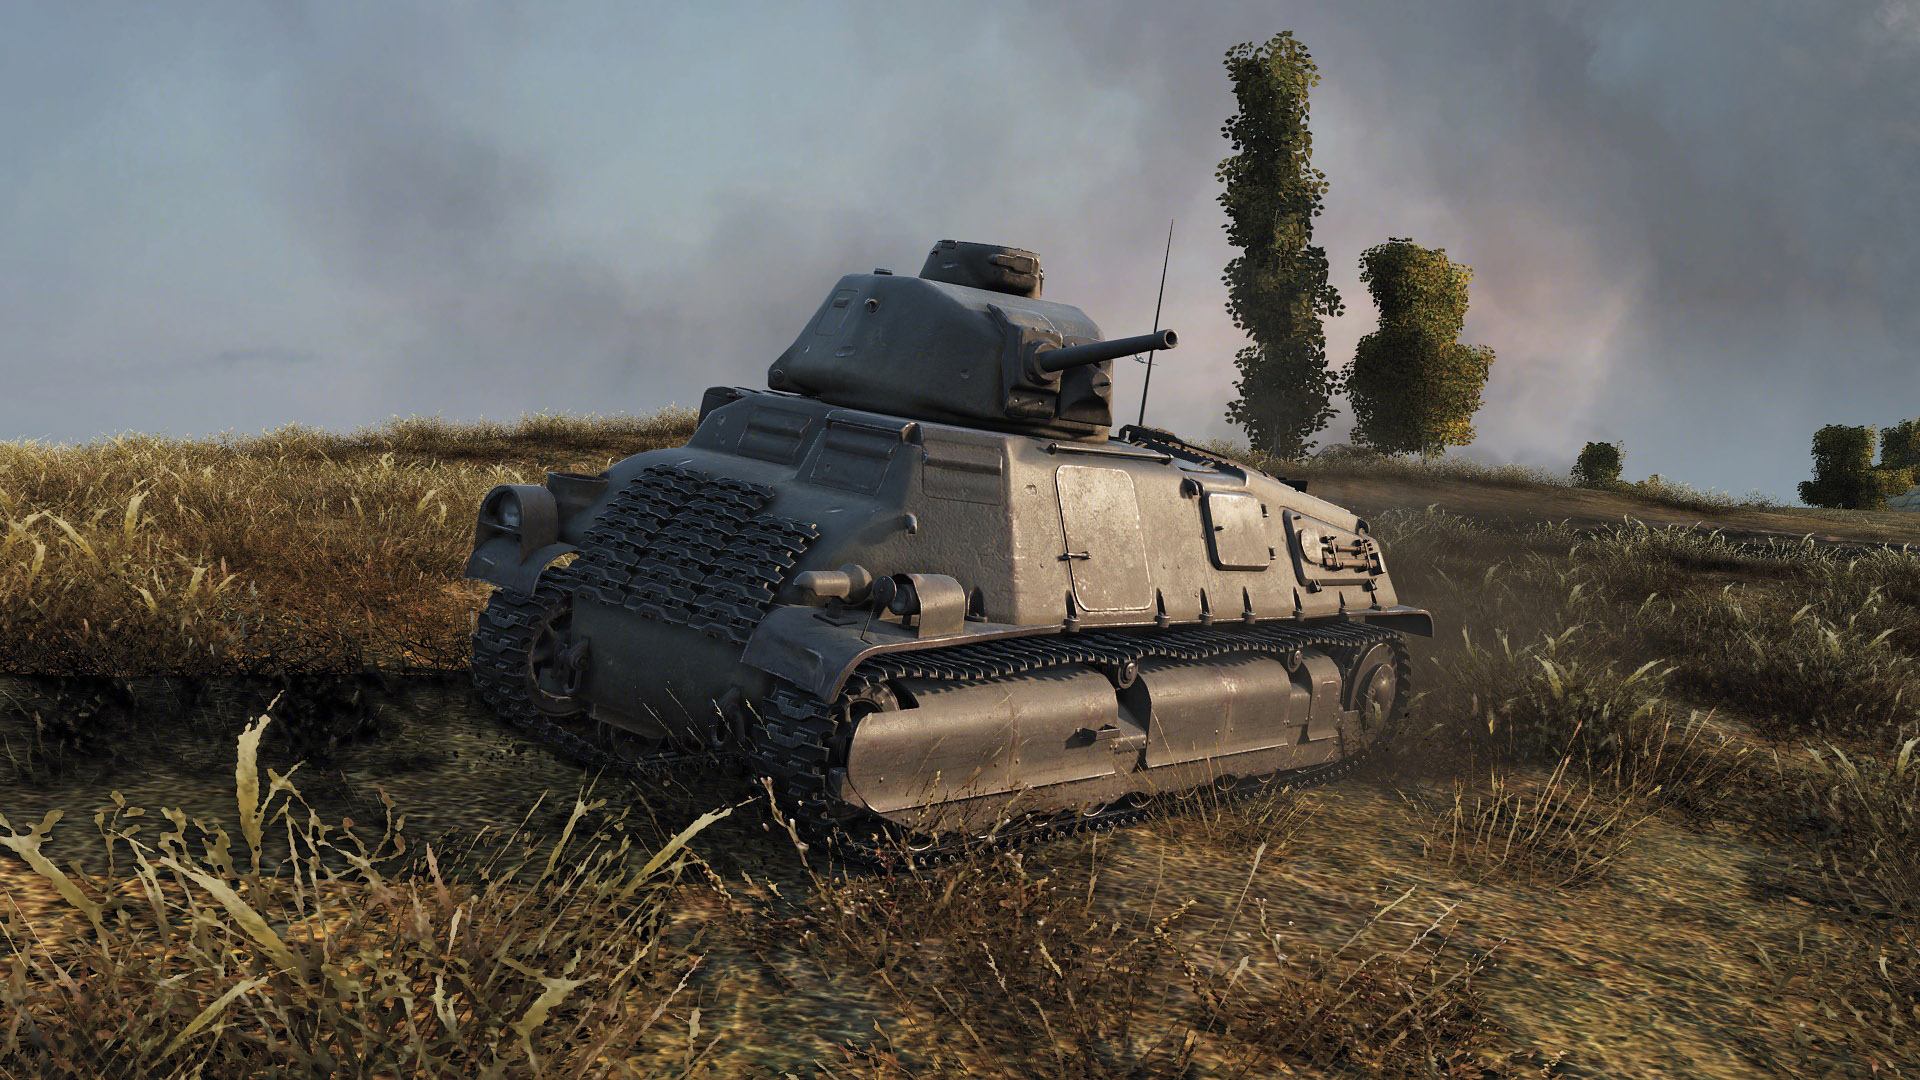 World of Tanks — гайд по Somua S35